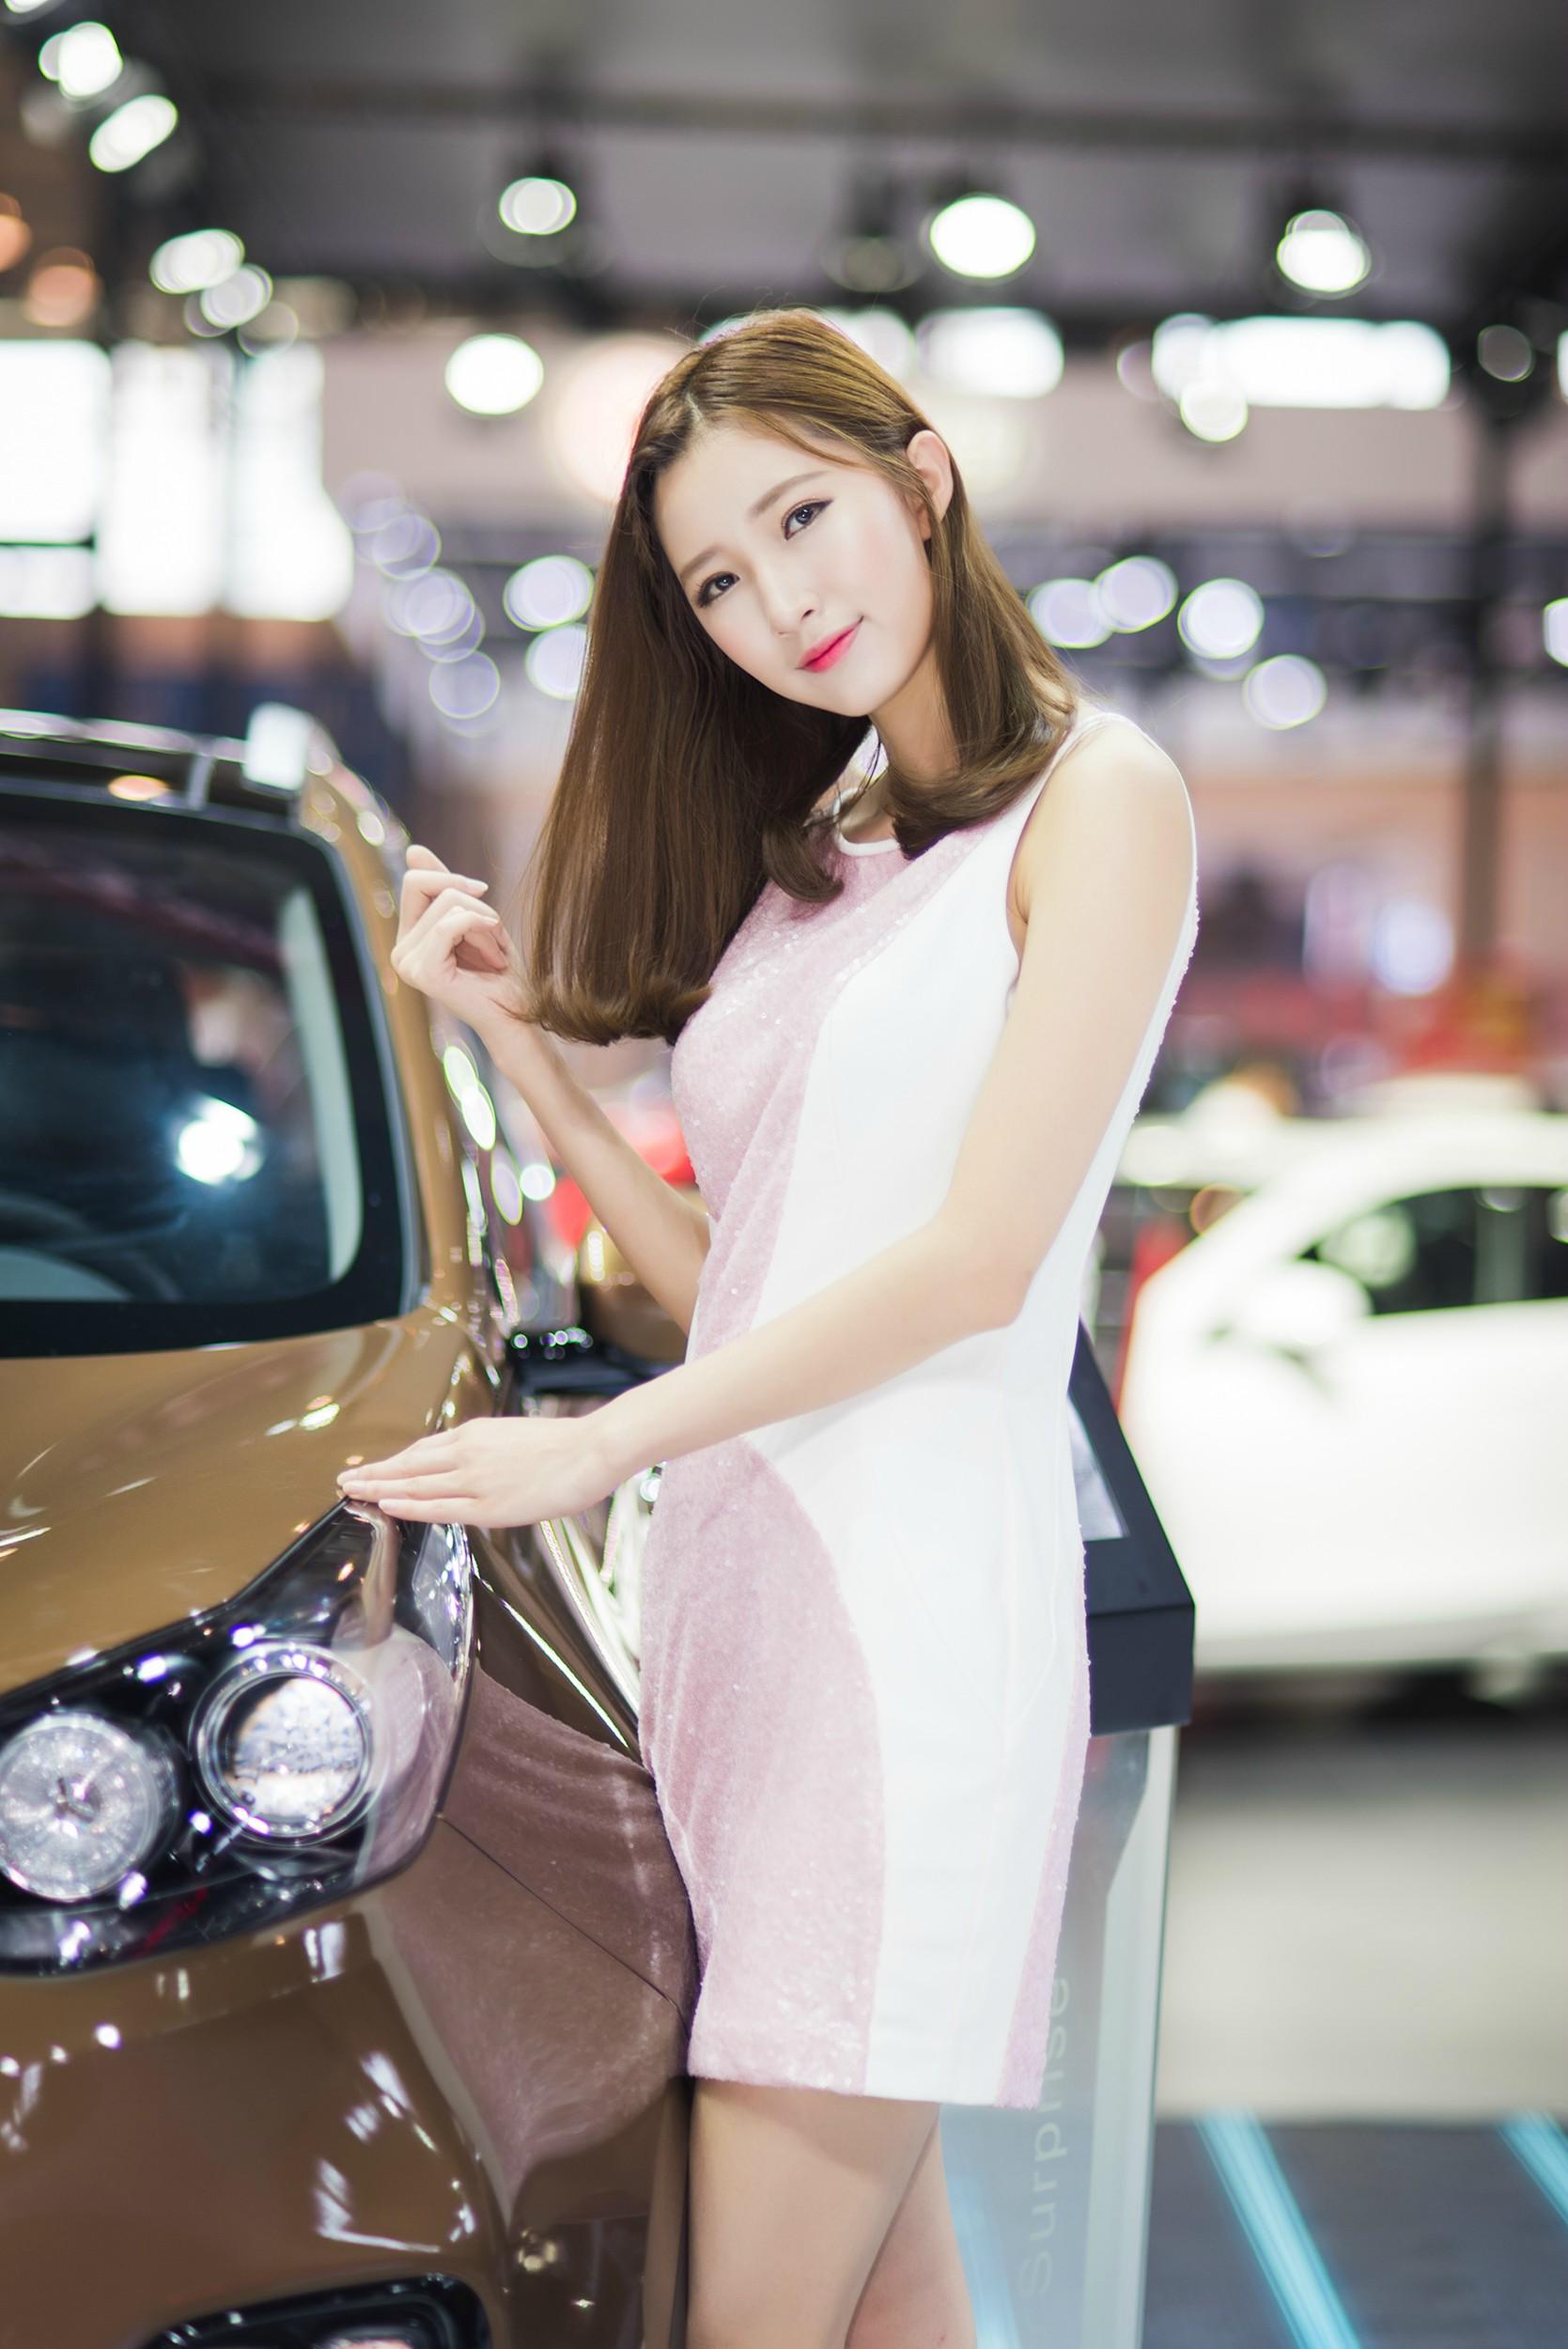 2016南京国际汽车博览会上身着粉白色连衣裙皮肤白嫩的美女车模,2016南京国际汽车博览会上身着粉白色连衣裙皮肤白嫩的美女车模